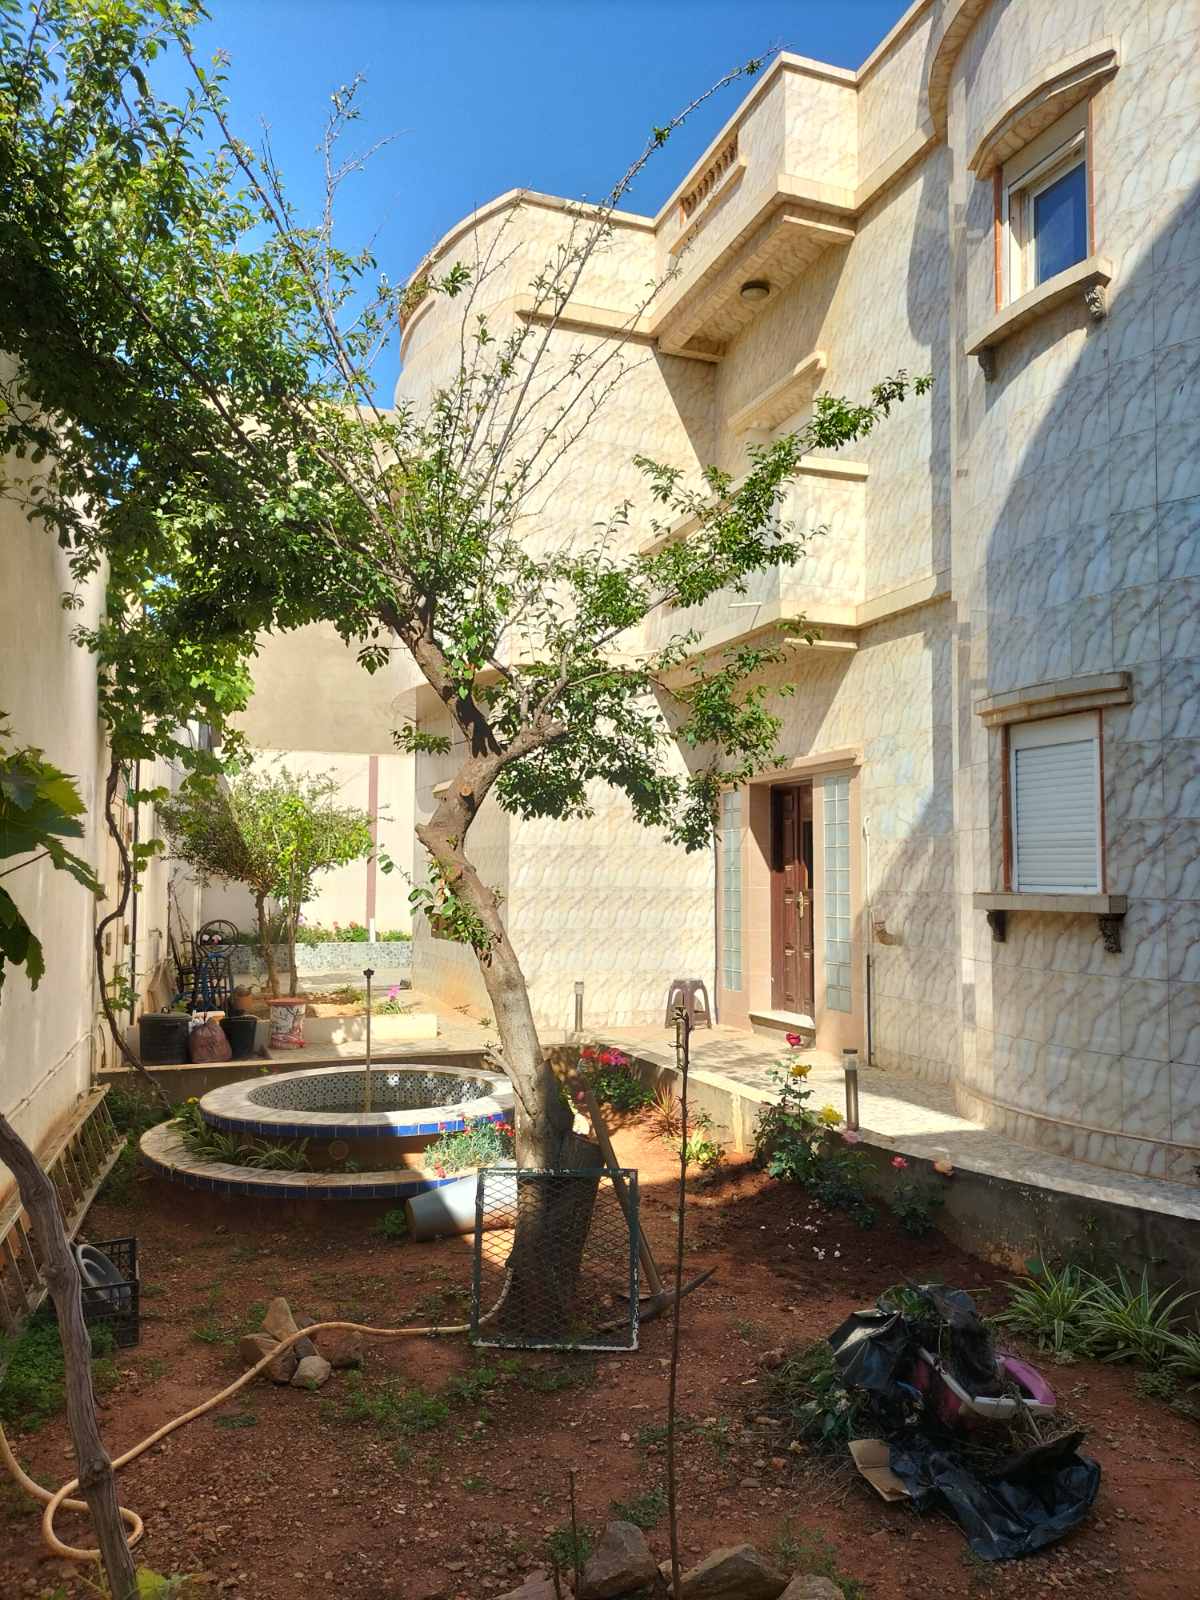 vente villa luxe 520m² actée à hassi mefsoukh oran